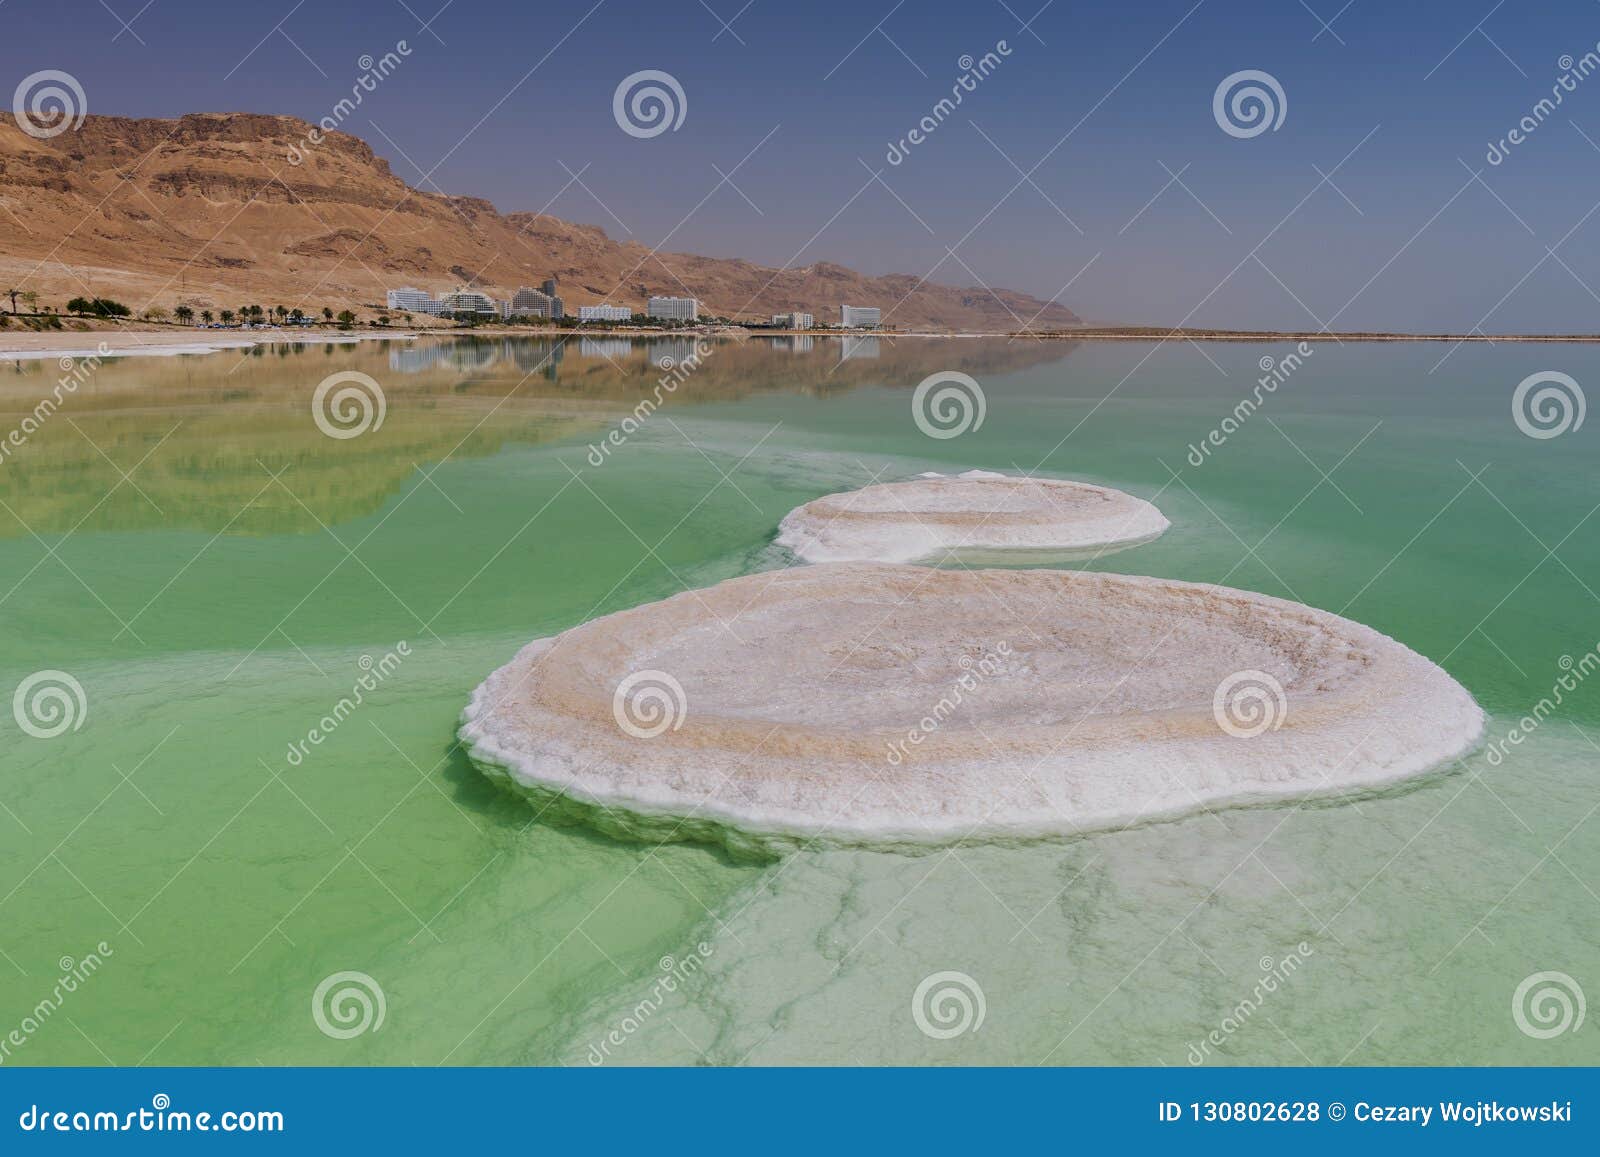 salt formation in ein bokek, dead sea, near neve zohar, israel.